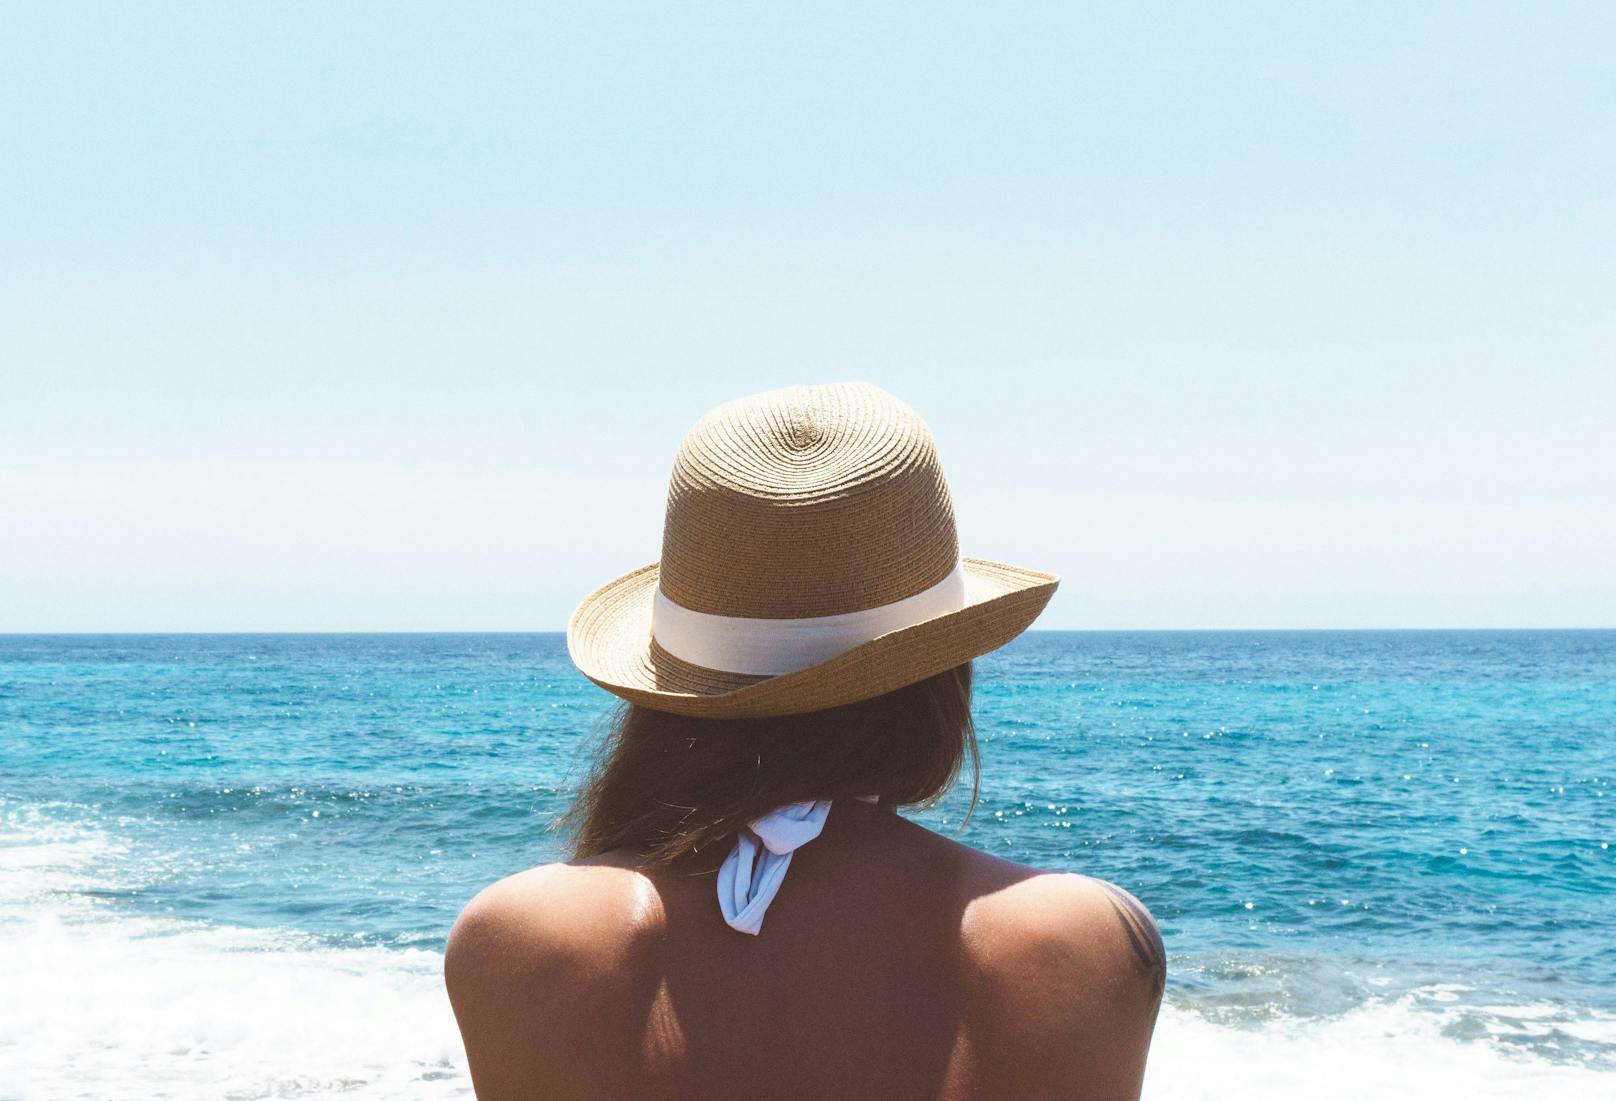 Kopfbedeckung wie ein Hut gehört zu einem Tag am Strand: Besonders breitkrempige Hüte schützen vor der Sonne und wirken gleichzeitig elegant.